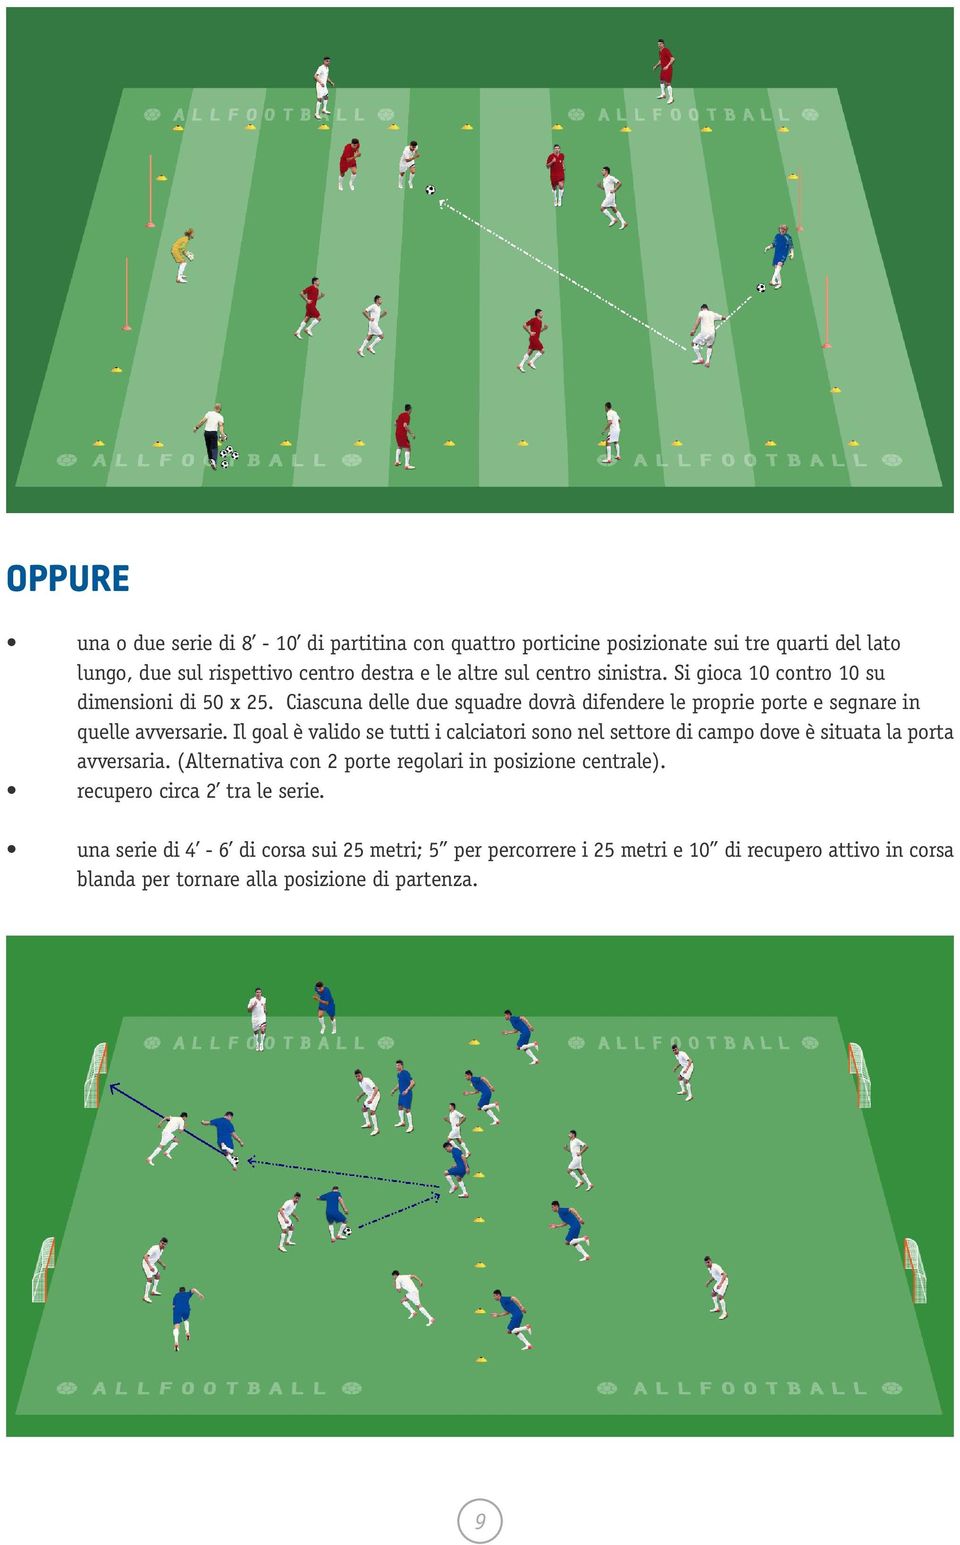 Il goal è valido se tutti i calciatori sono nel settore di campo dove è situata la porta avversaria. (Alternativa con 2 porte regolari in posizione centrale).